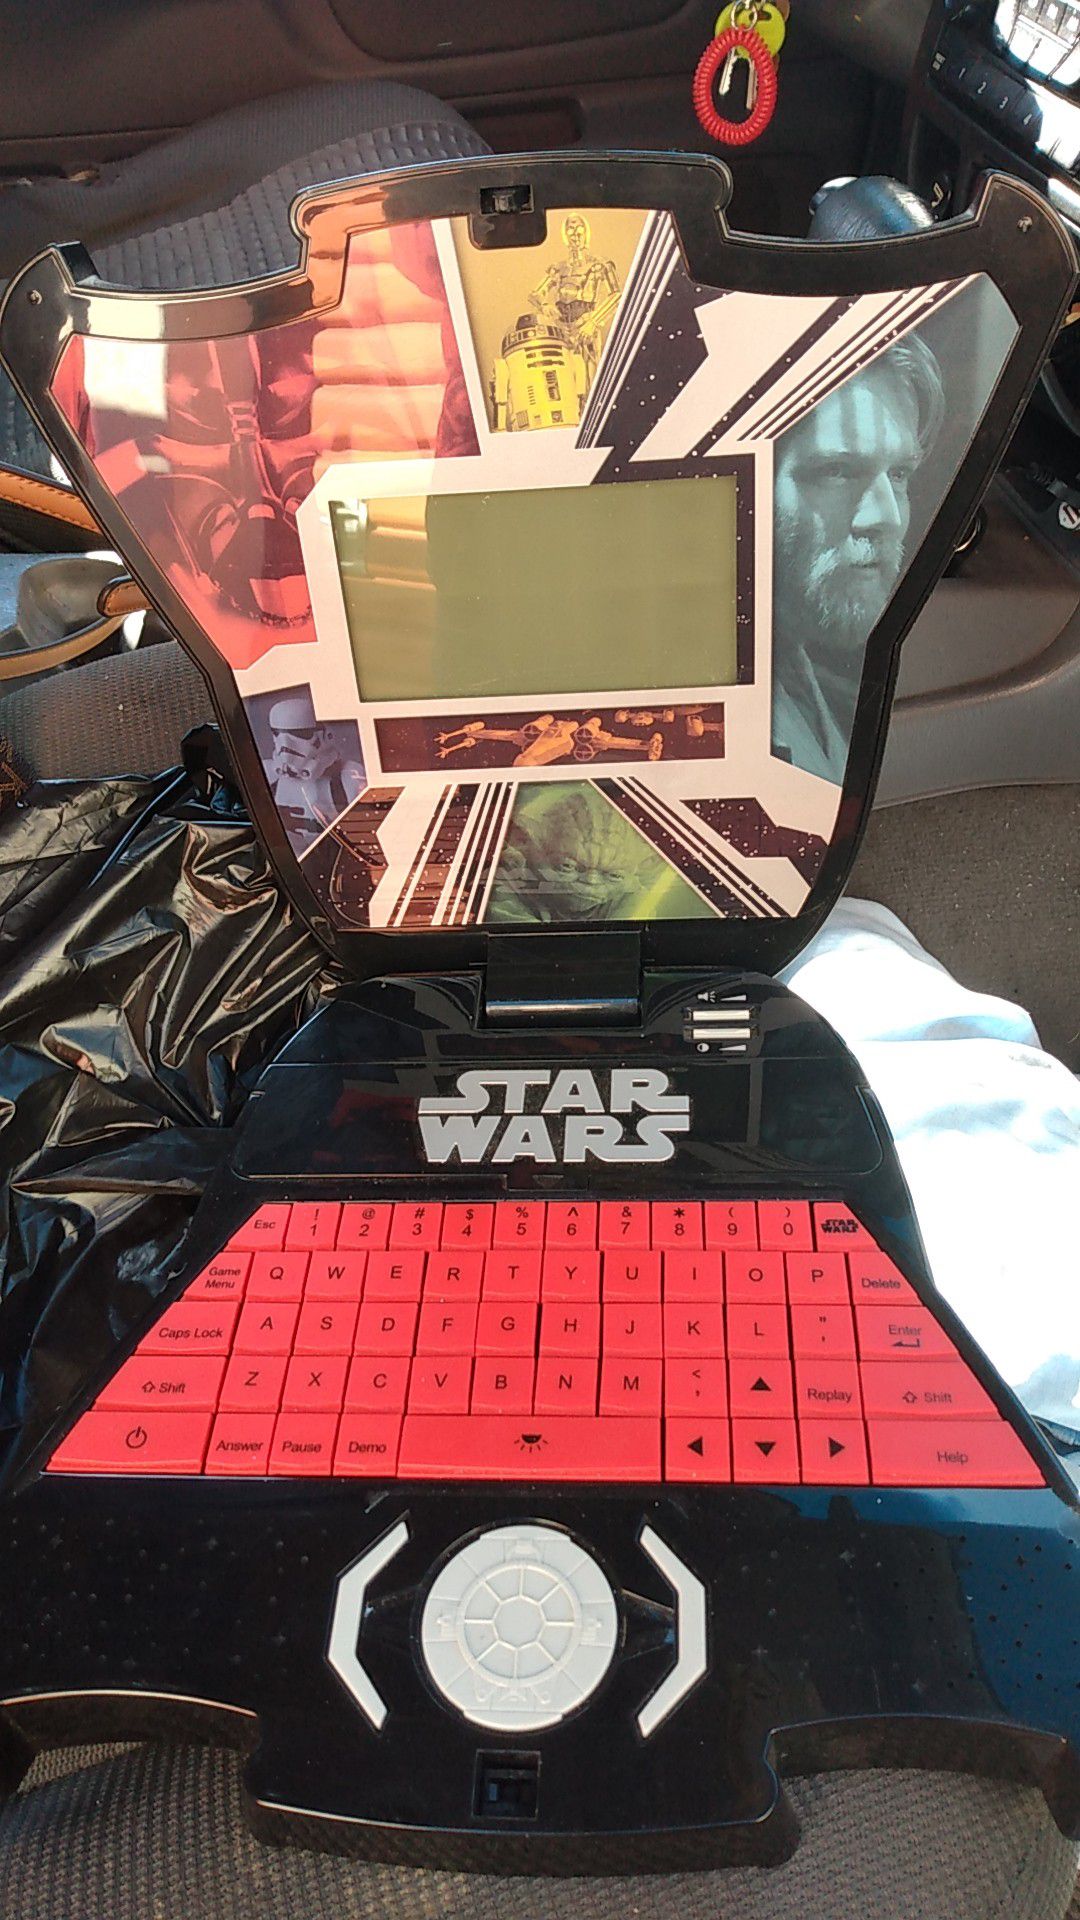 Star wars laptop